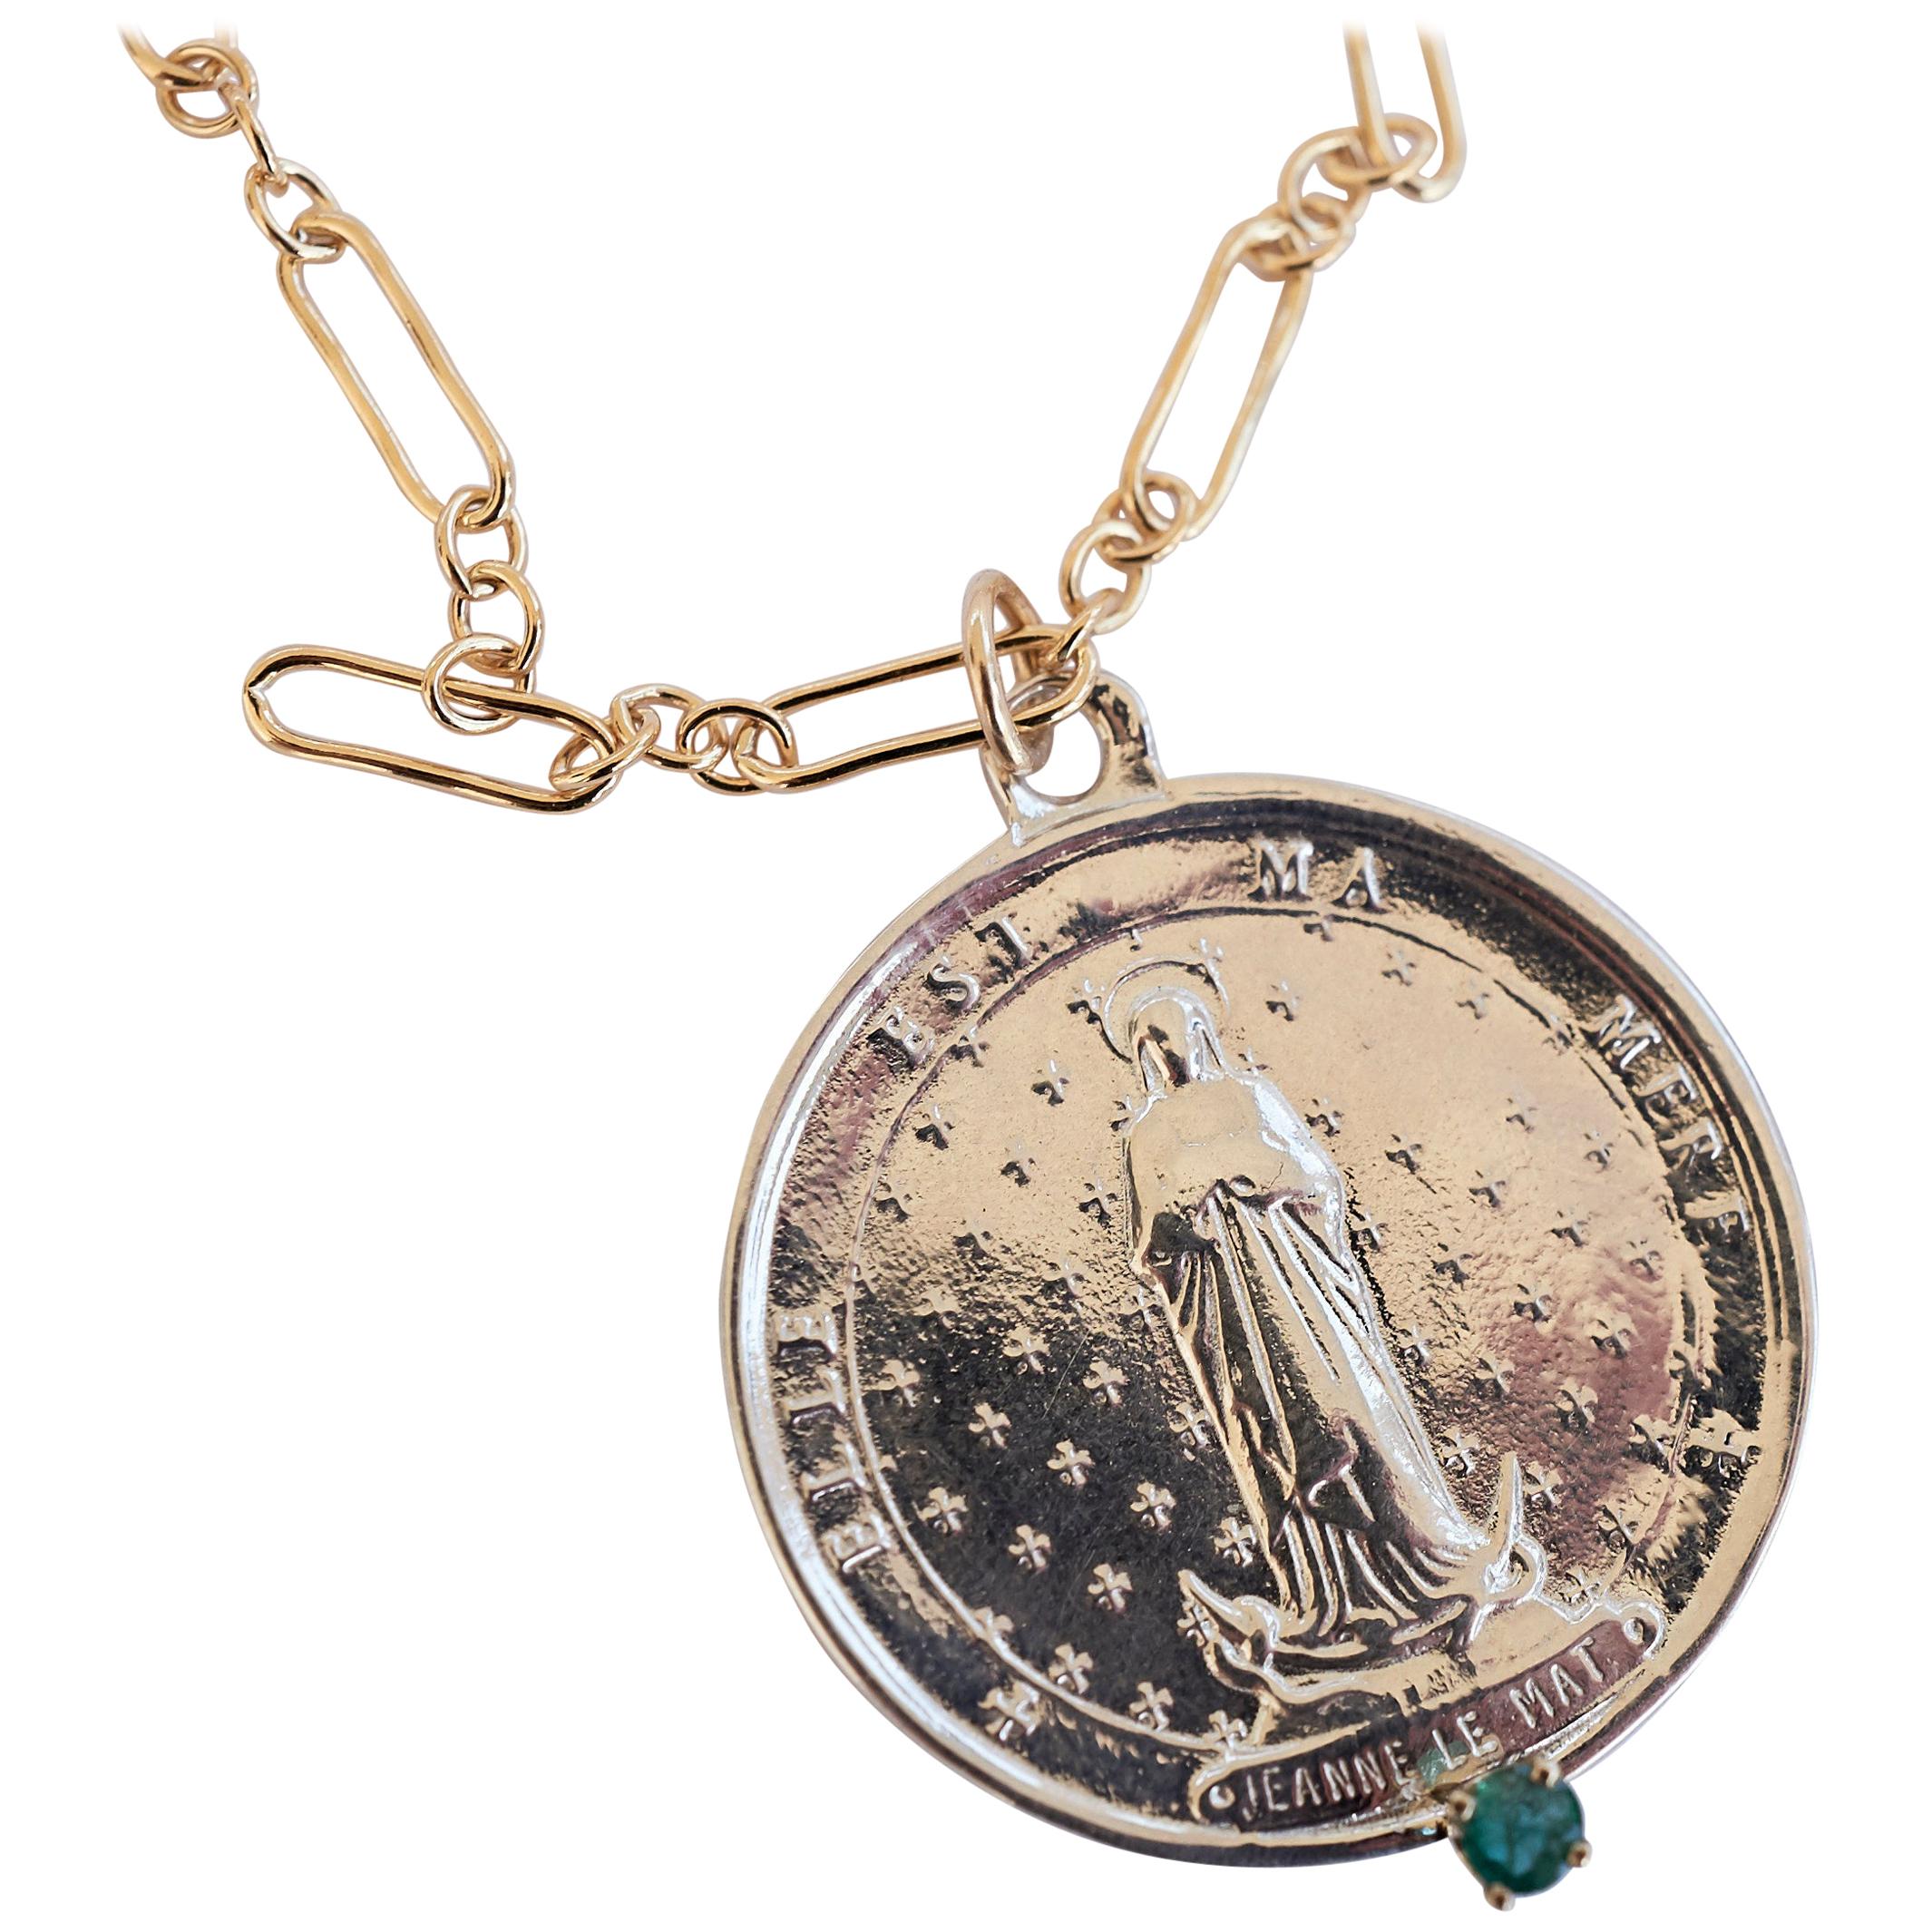 Chaîne collier médaillon argent émeraude remplie or Jeanne Le Mat J Dauphin